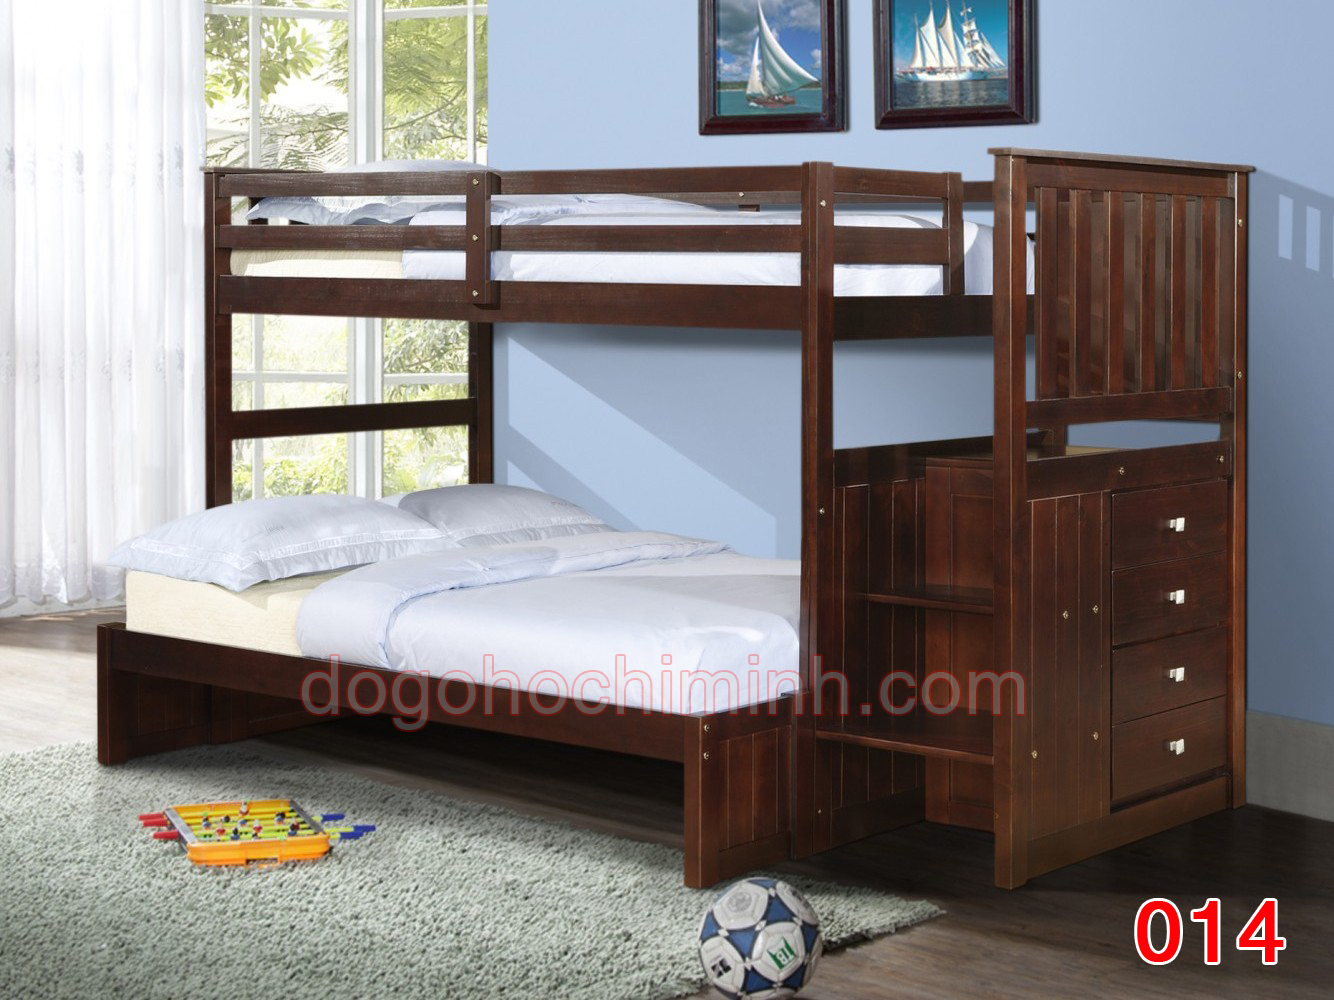 Giường tầng trẻ em bằng gỗ K.Bed 014